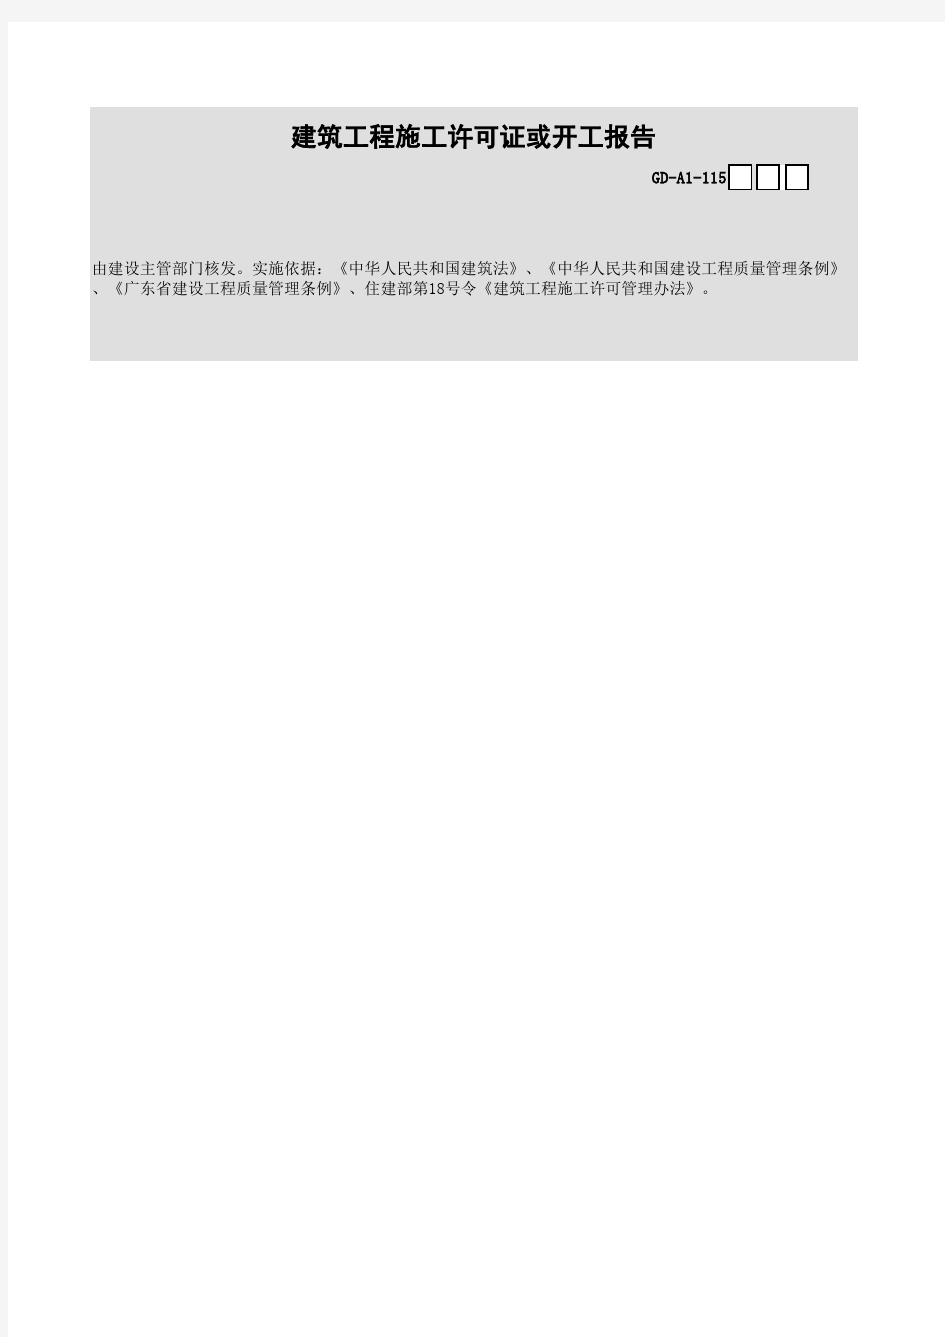 广东省建筑工程统一用表(2017版)建筑工程施工许可证或开工报告